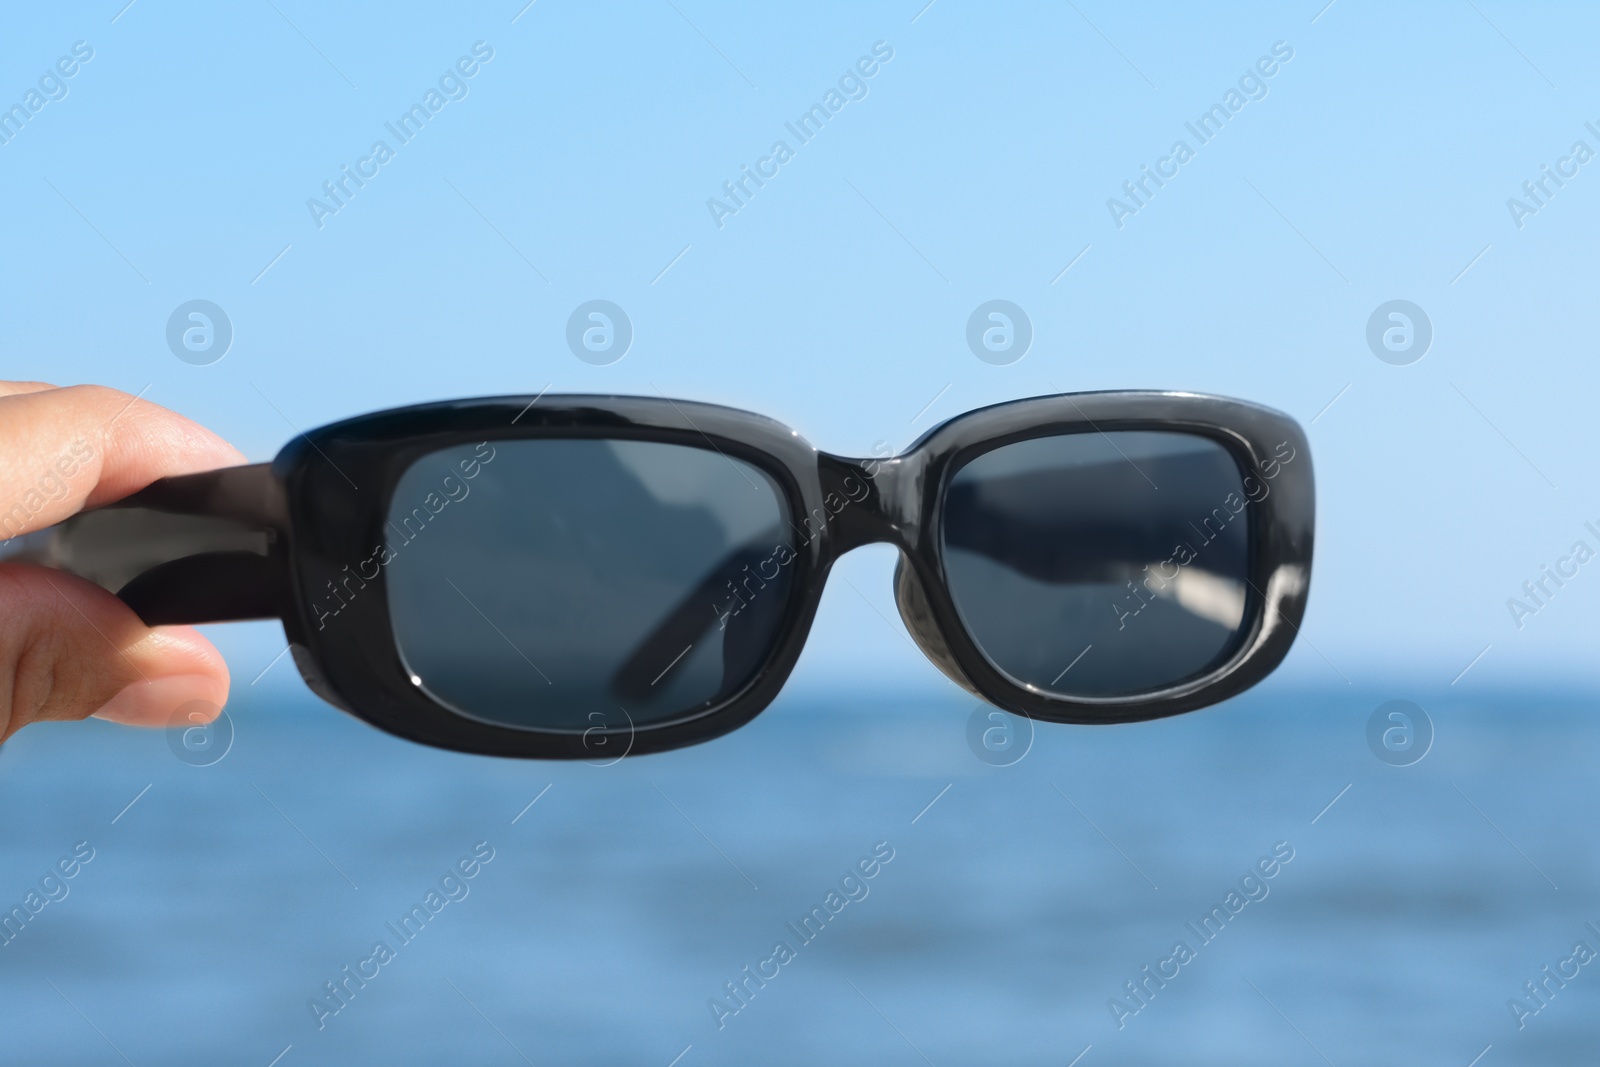 Photo of Woman holding stylish sunglasses near sea, closeup